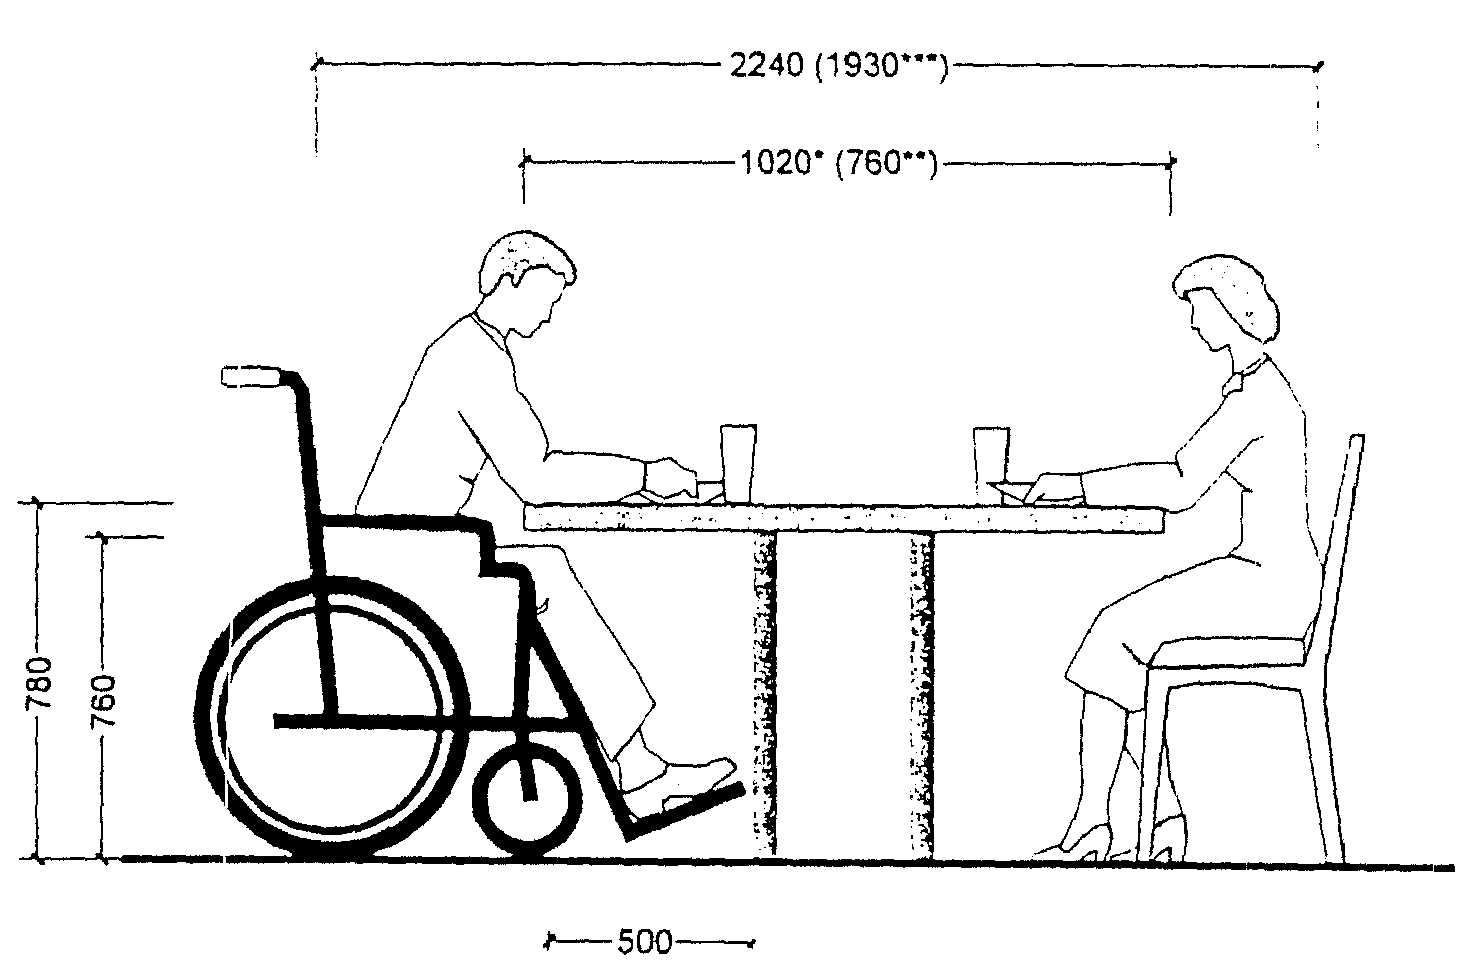 Расстояние между стульями за столом